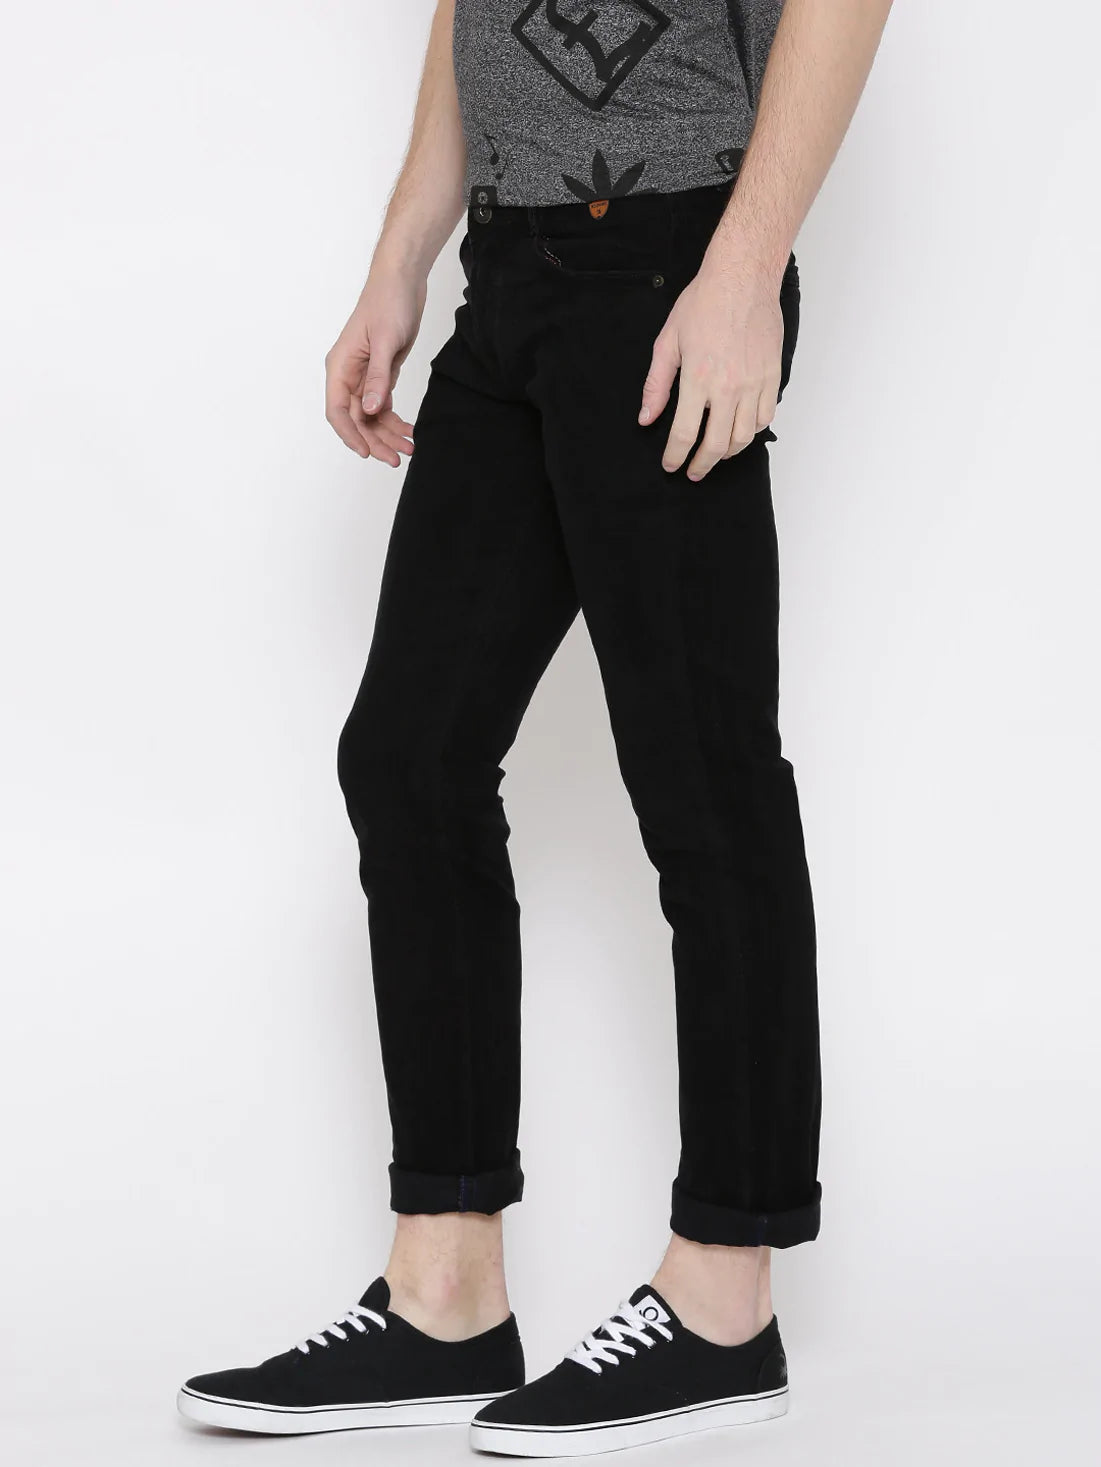 Buy Men Black Dark Wash Skinny Fit Jeans Online - 729535 | Van Heusen